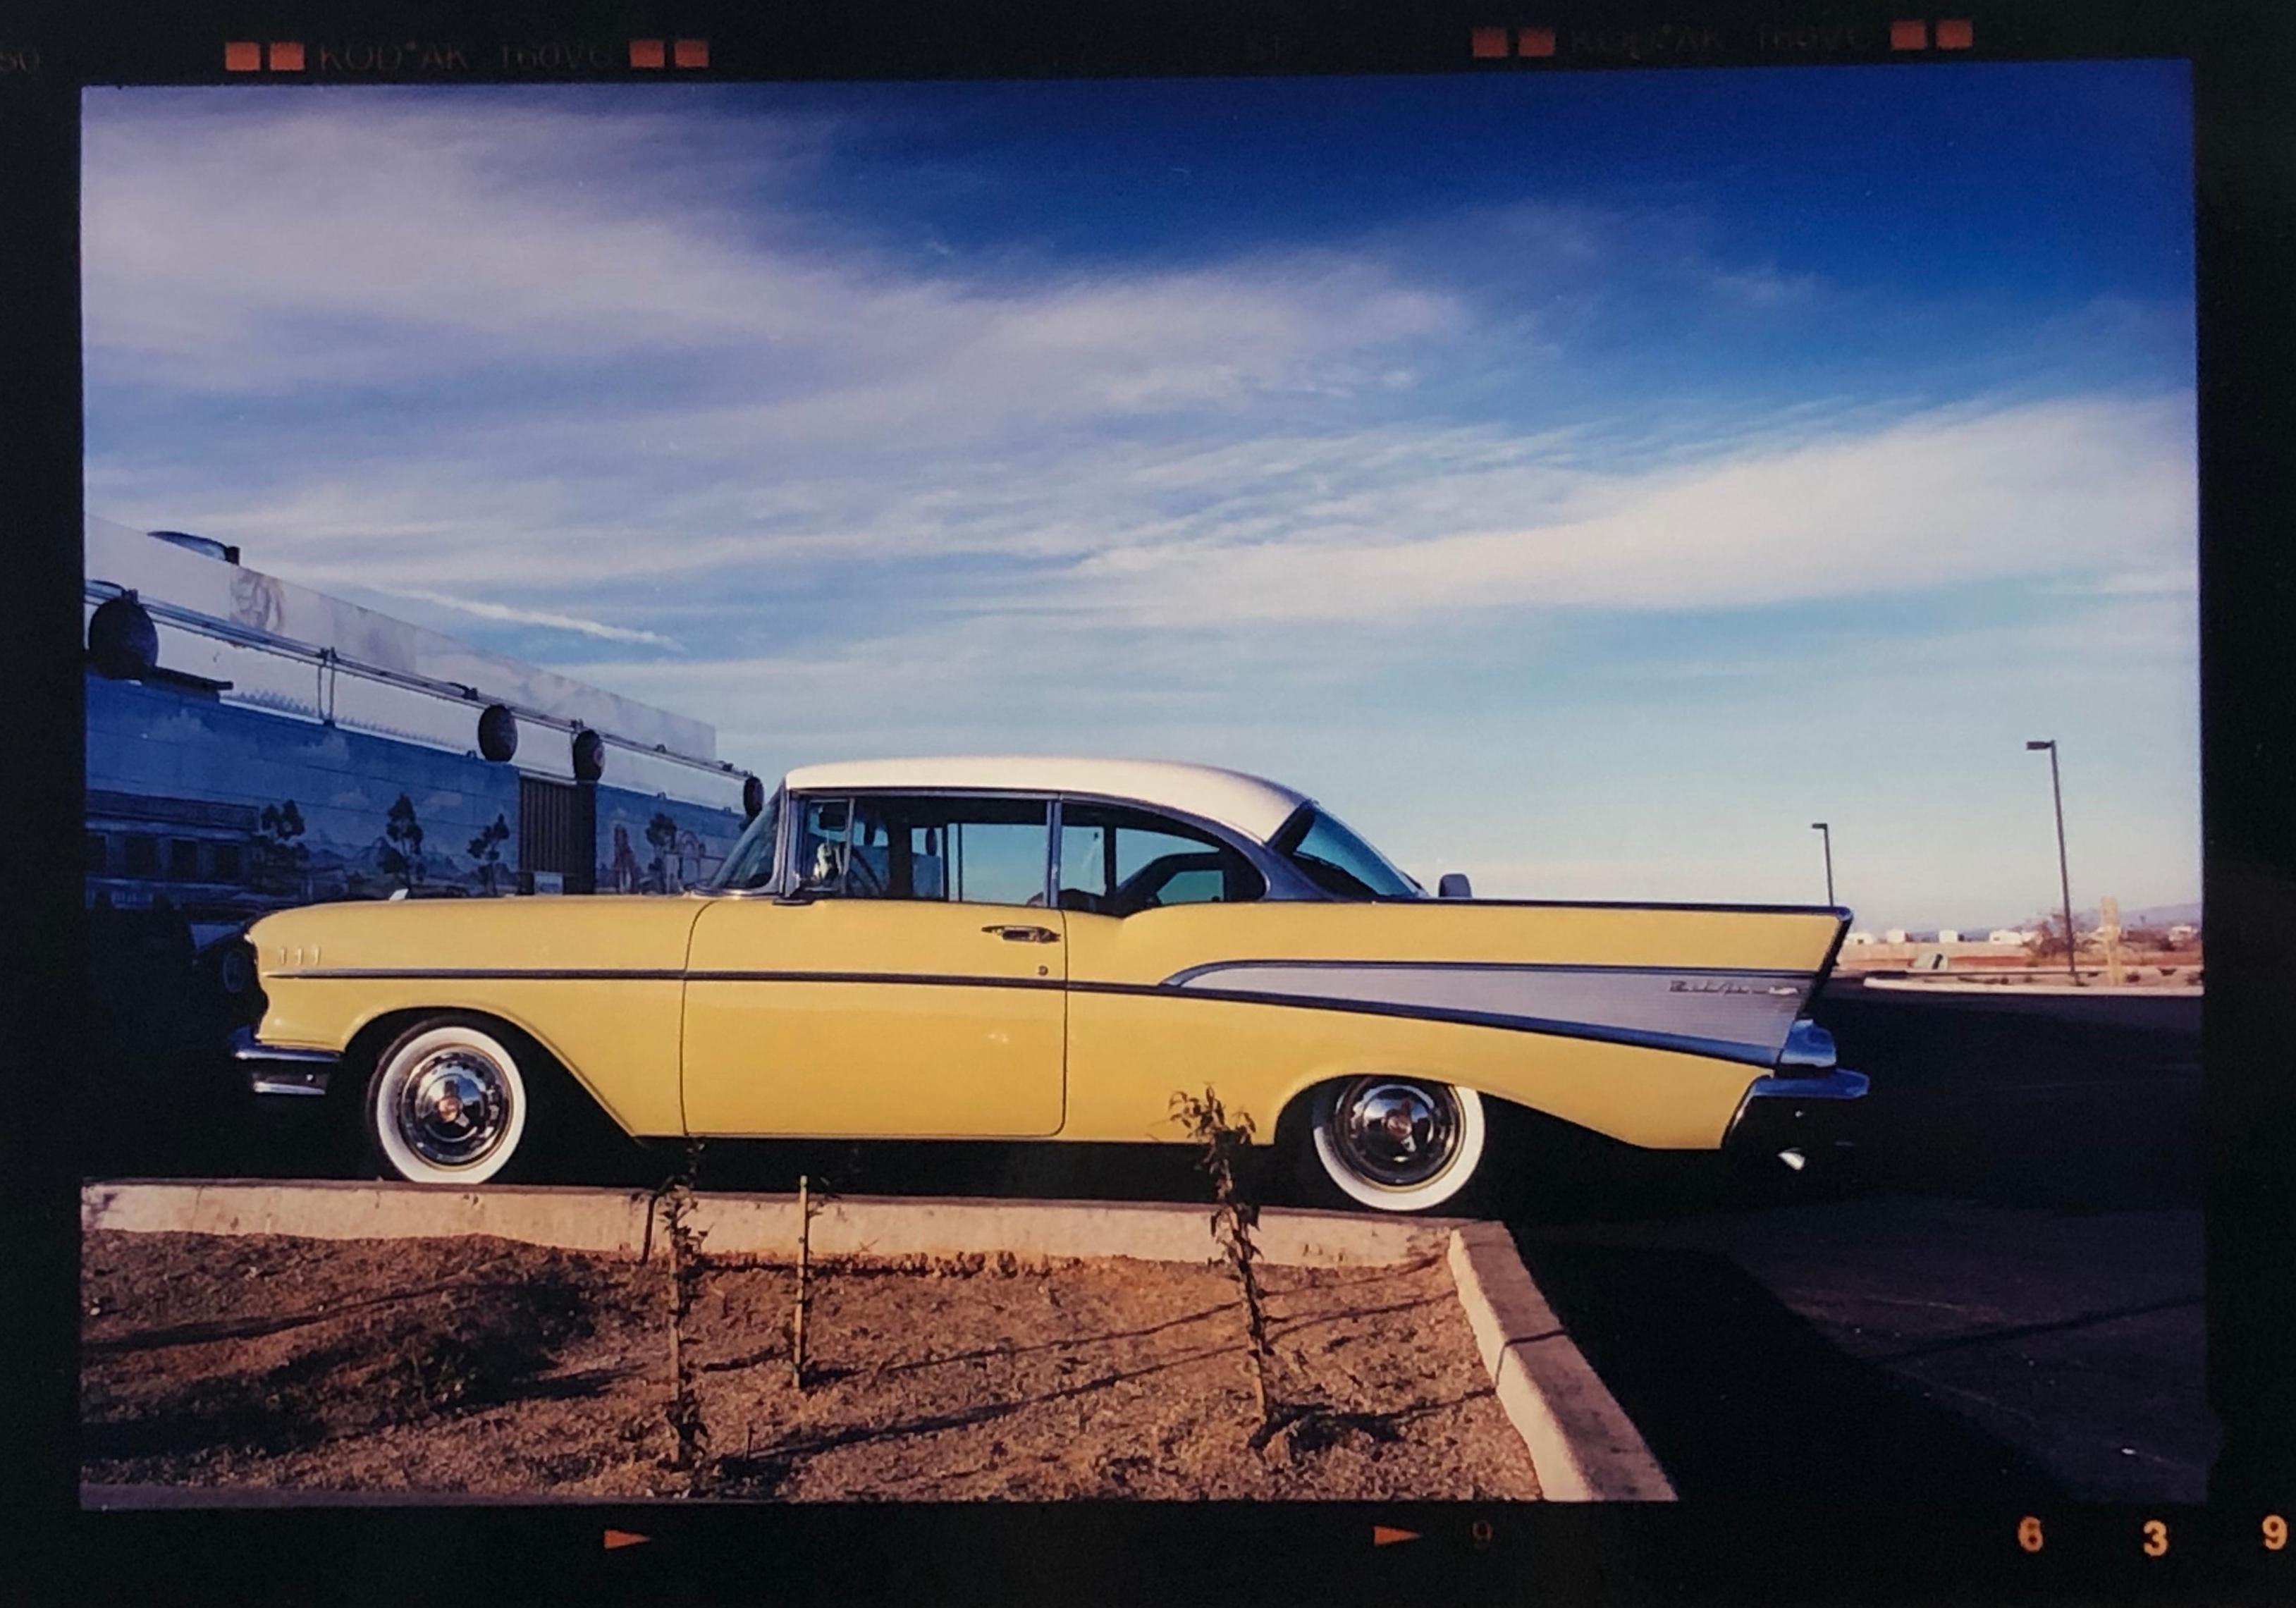 Chevy at the Diner, Bisbee, Arizona – amerikanische Farbfotografie